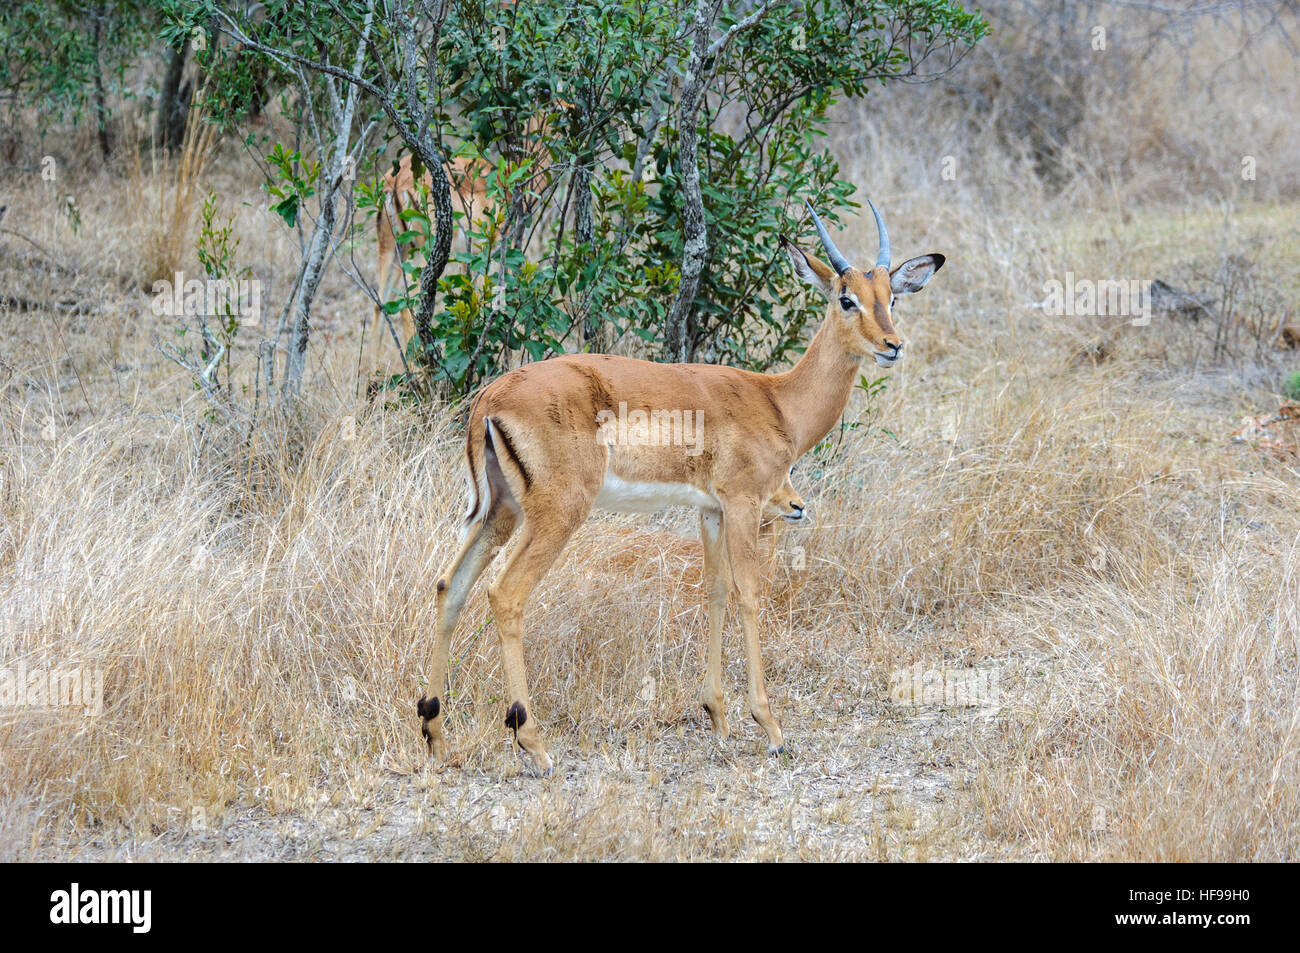 Impala (Aepyceros melampus), South Africa, Africa Stock Photo